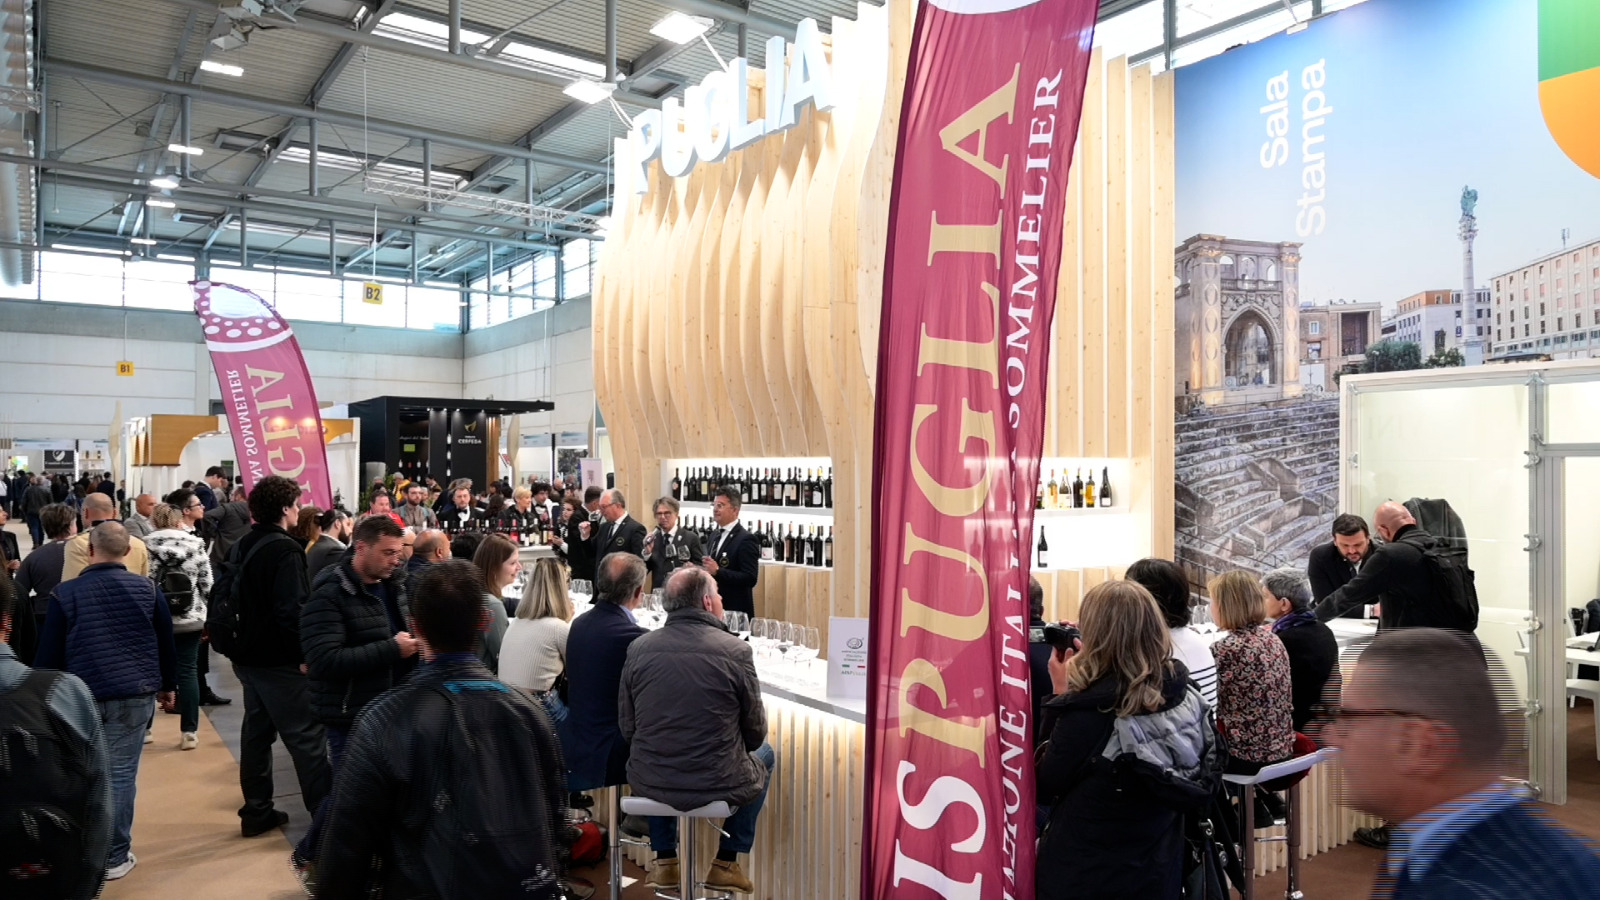 Galleria Taglio del nastro della Puglia al Vinitaly 2023, Pentassuglia: “Manteniamo alto il livello del nostro settore vitivinicolo, specialmente sui mercati internazionali” - Diapositiva 5 di 13